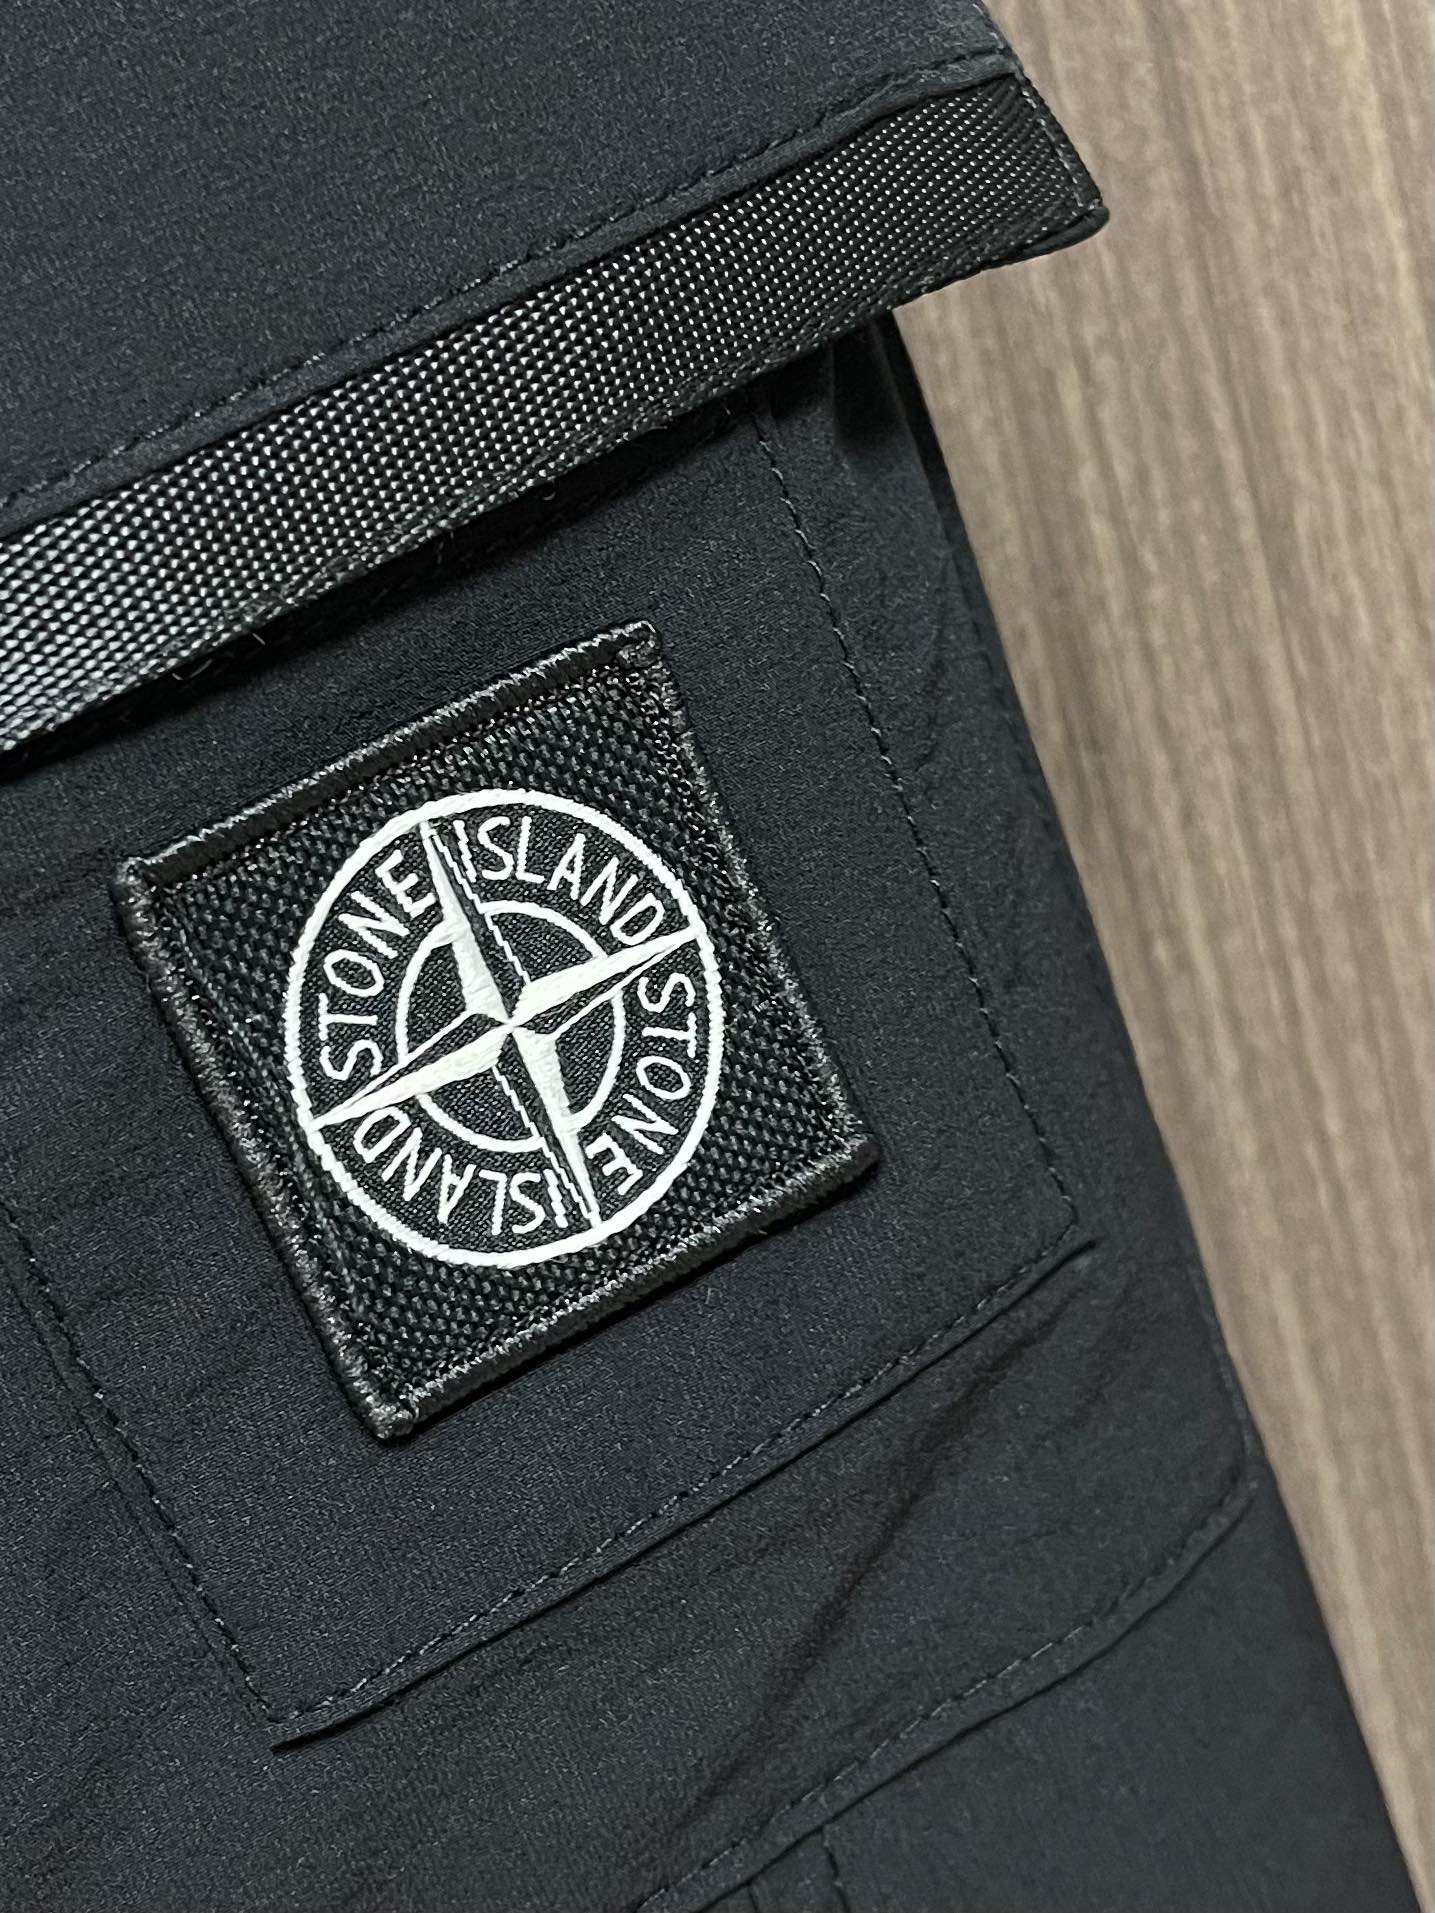 stoneisland石头岛新款立体夹克外套保持着一贯低调且硬汉的风格简洁且个性原厂工艺加工定制辅料配件